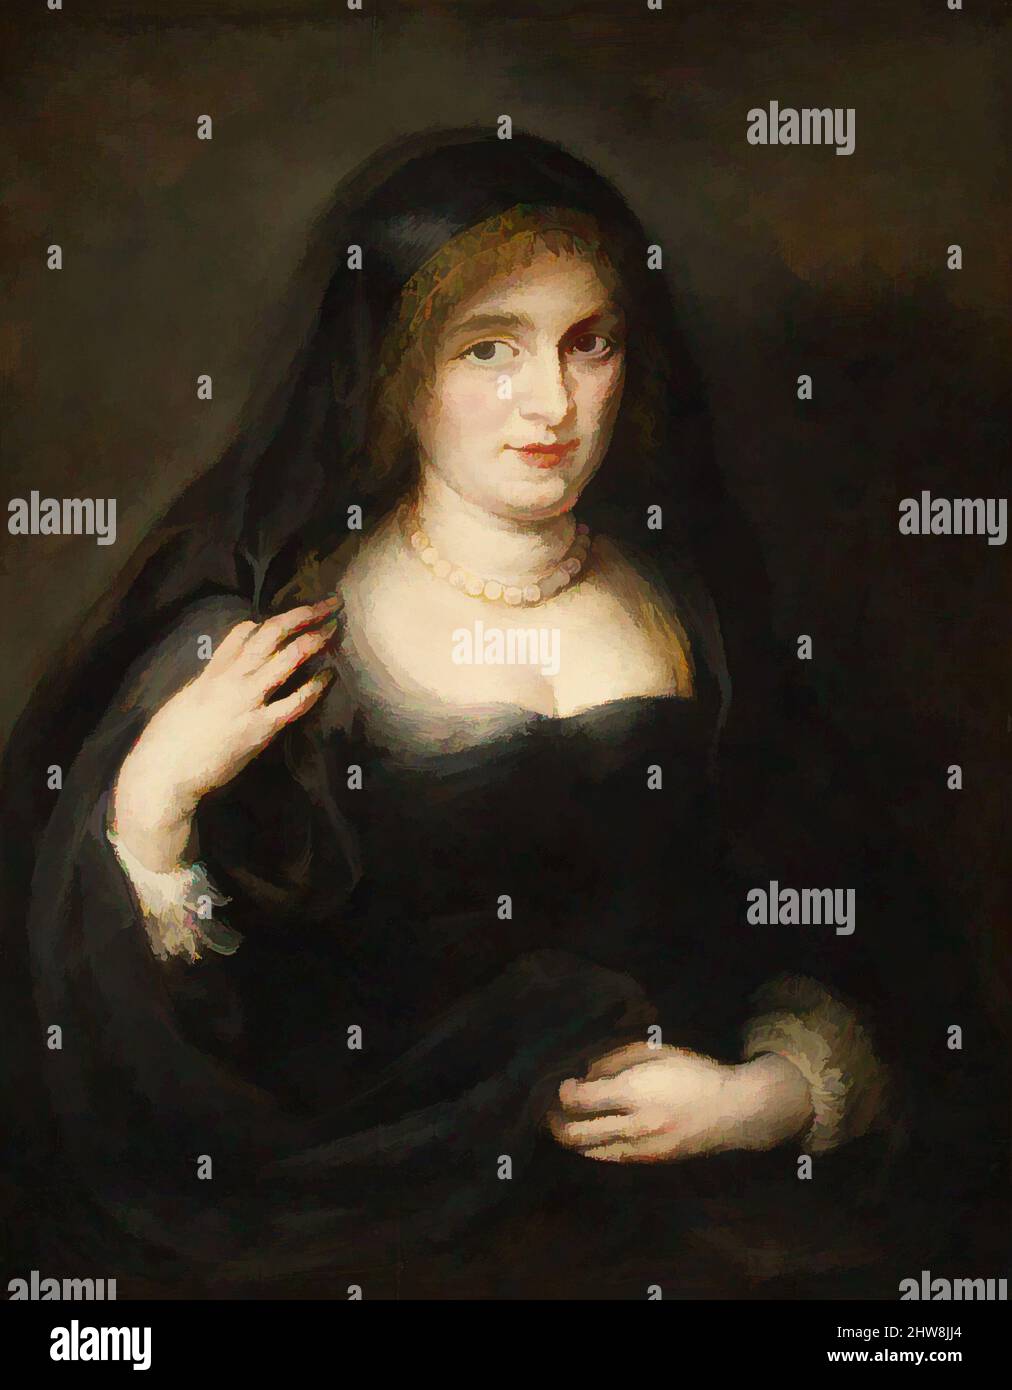 Art inspiré par Portrait d'une femme, probablement Susanna Lunden (Susanna Fourment, 1599–1628), ca. 1625–27, huile sur bois, 30 1/4 x 23 5/8 po (76,8 x 60 cm), avec bande de 3 3/4 po (9,5 cm) au fond, peintures, Peter Paul Rubens (Flamand, Siegen 1577–1640 Anvers), ce, œuvres classiques modernisées par Artotop avec une touche de modernité. Formes, couleur et valeur, impact visuel accrocheur sur l'art émotions par la liberté d'œuvres d'art d'une manière contemporaine. Un message intemporel qui cherche une nouvelle direction créative. Artistes qui se tournent vers le support numérique et créent le NFT Artotop Banque D'Images